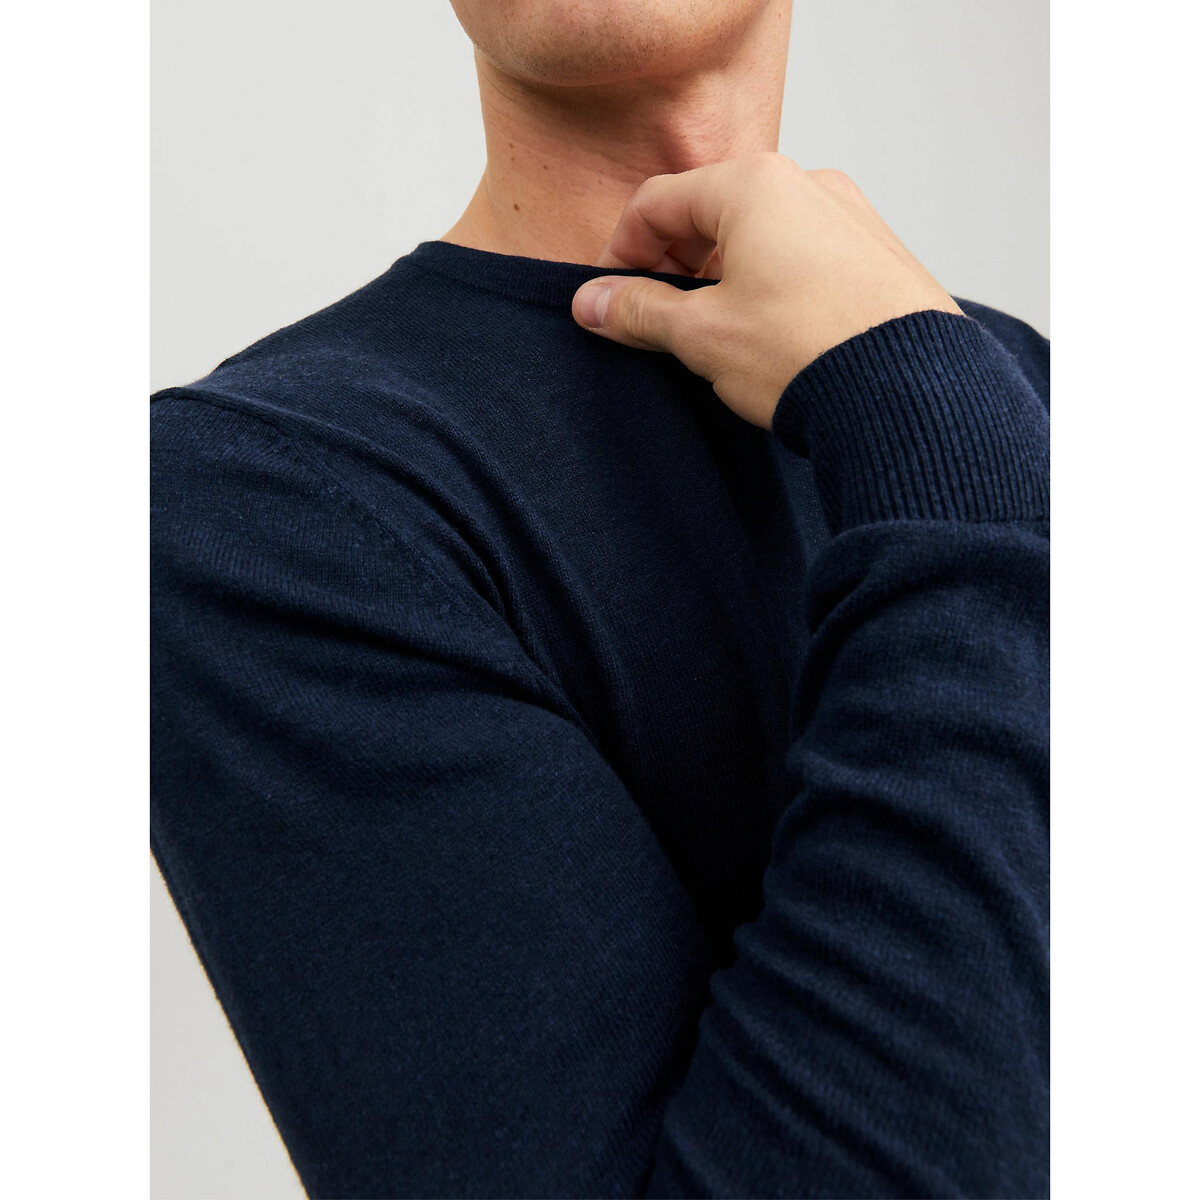 Пуловер С круглым вырезом L синий LaRedoute, размер L - фото 3